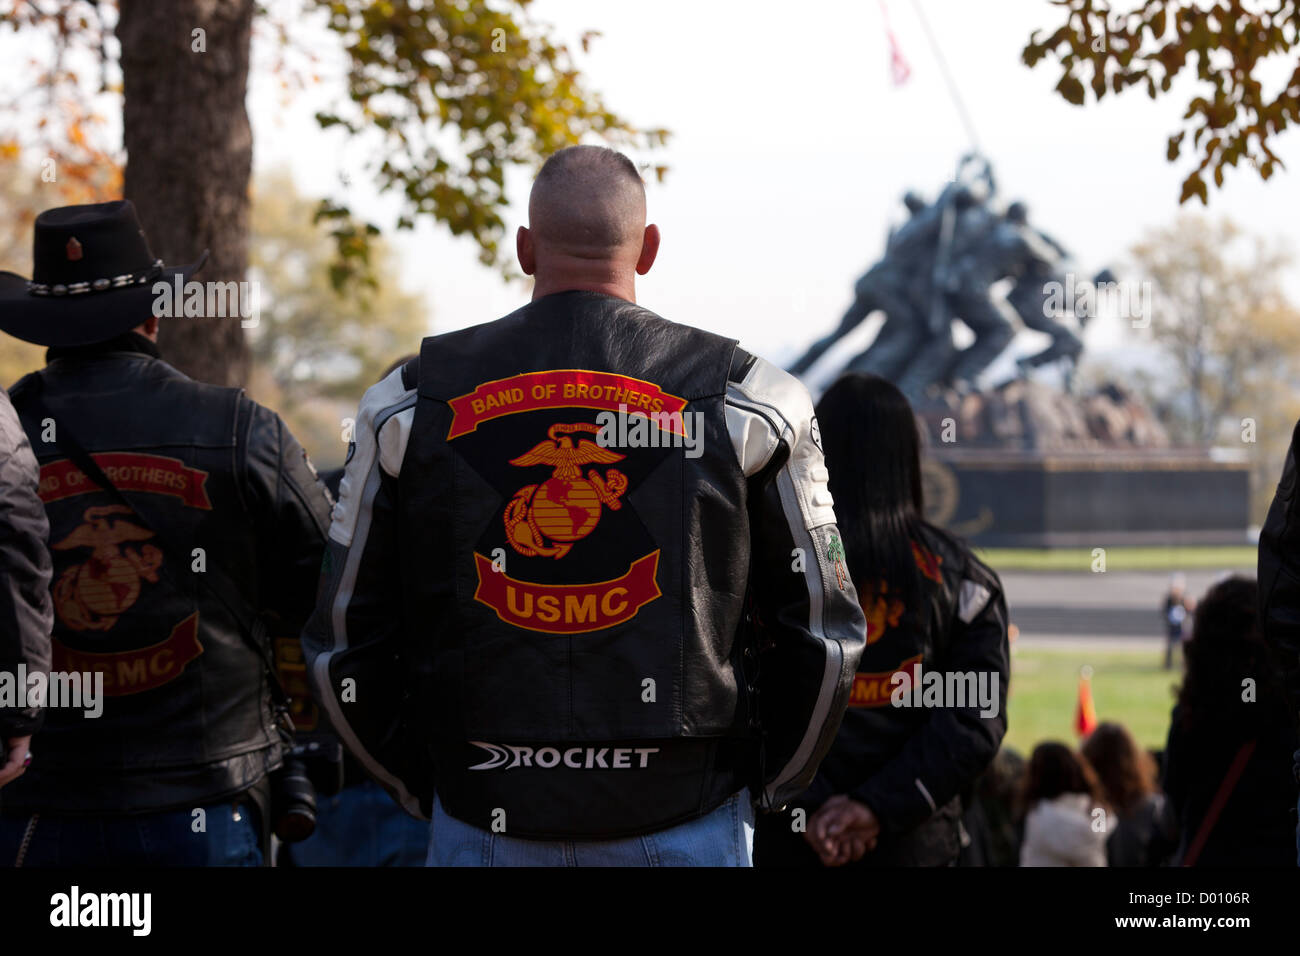 Banda di fratelli USMC moto club di equitazione insegna sulla camicia Foto Stock